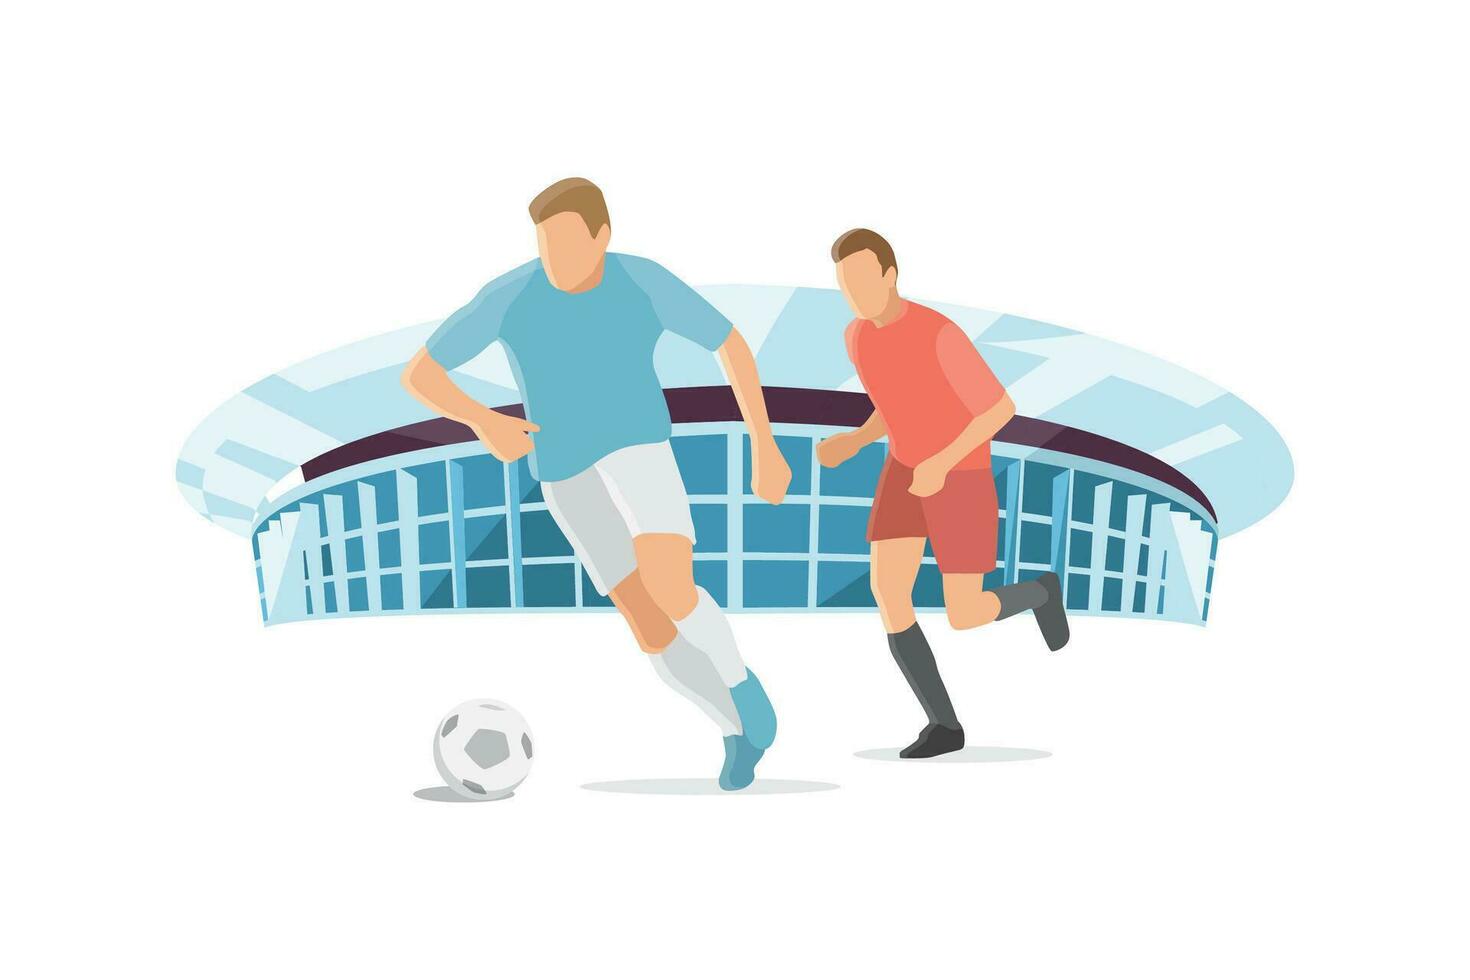 twee Amerikaans voetbal speler met stadion achtergrond vector illustratie